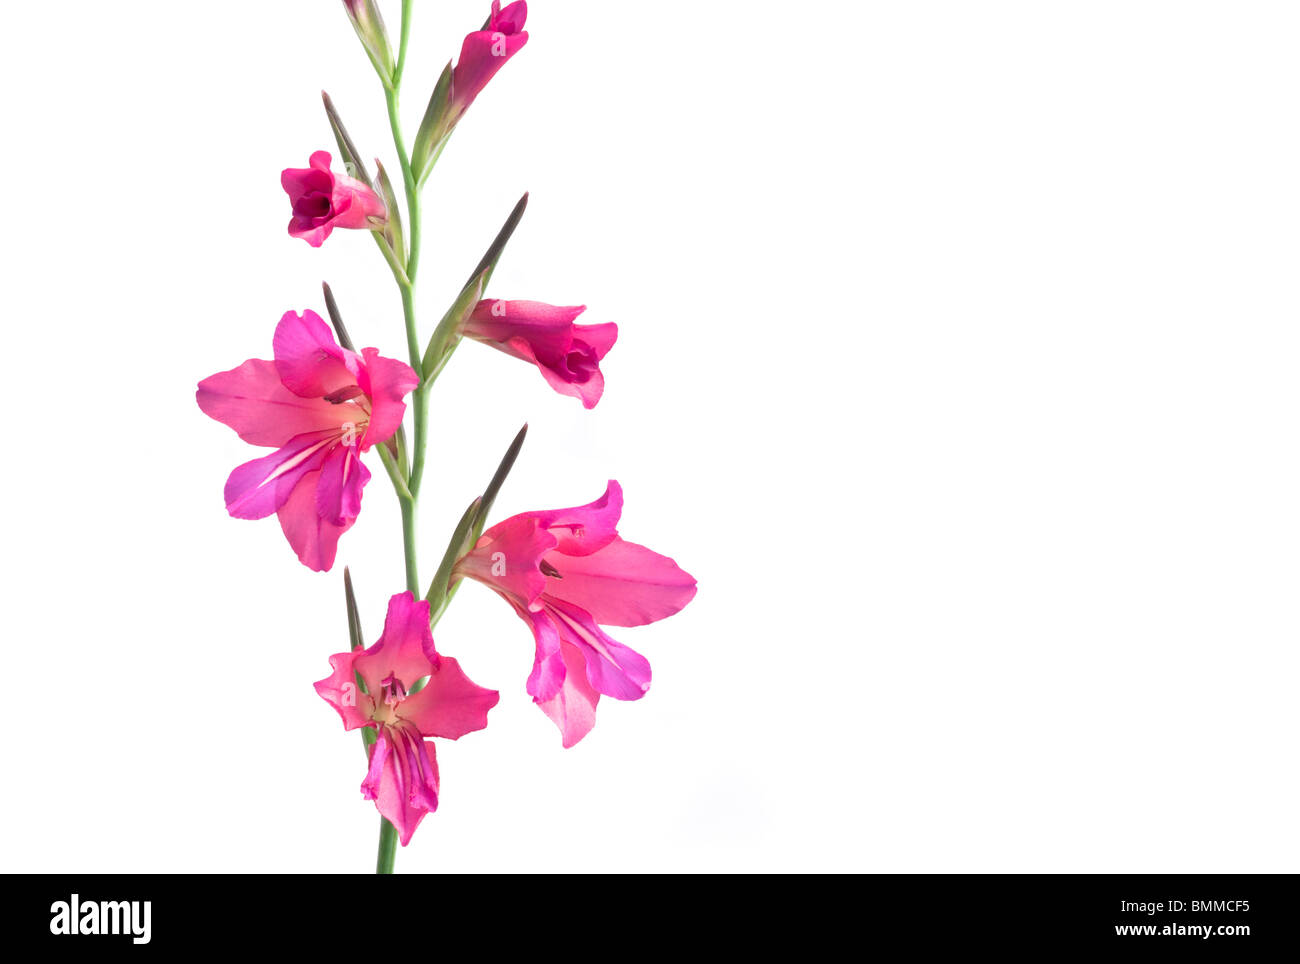 Pink and Orange Gladioli Flowers (Gladiolus) on a White Background Stock Photo